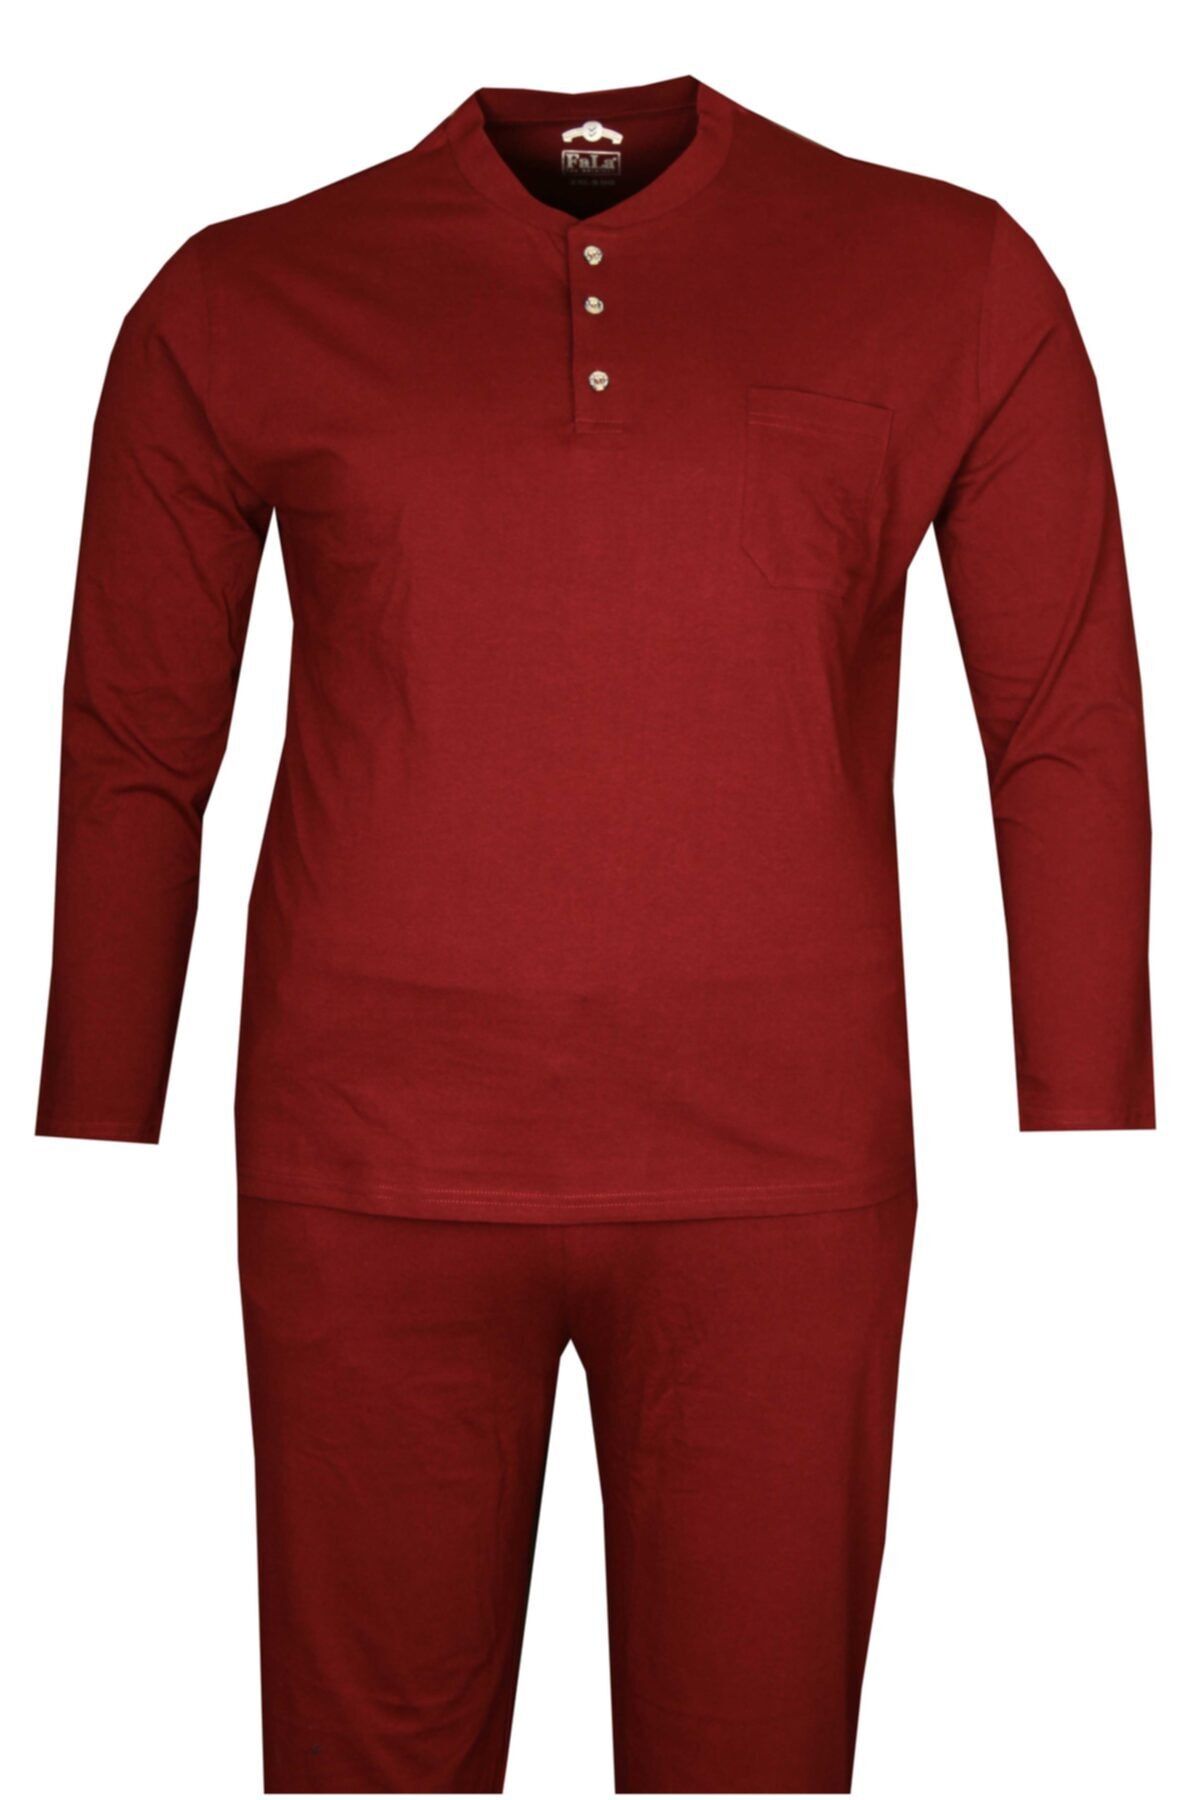 FaLa Jeans Büyük Beden Penye Pijama Takımı Bordo 86001